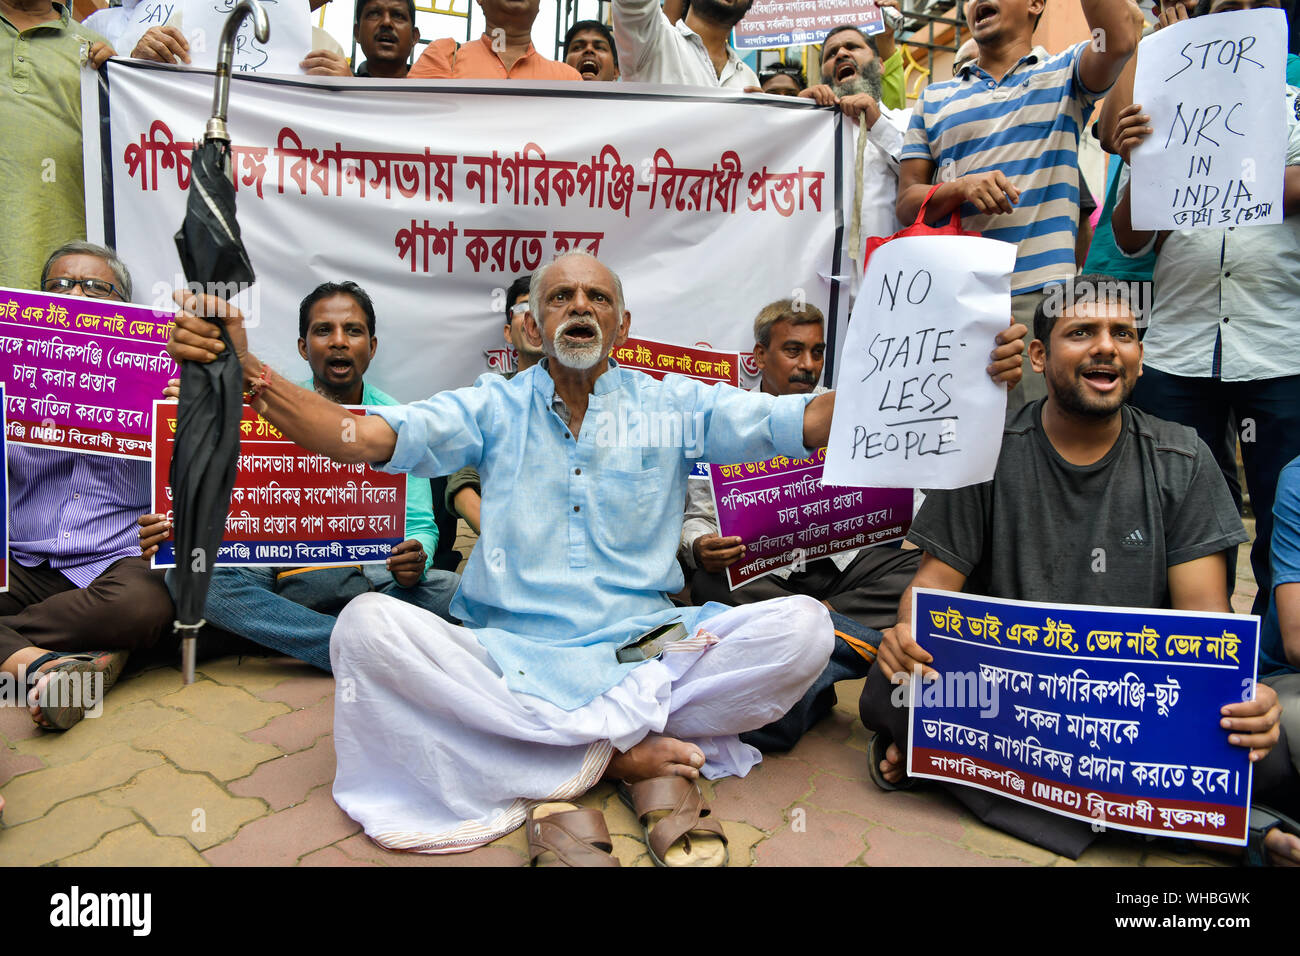 Die Demonstranten halten Plakate und Fahnen und riefen Parolen bei einer Demonstration gegen die nationalen Register der Bürger (NRC) in Kalkutta. Die nationalen Register der Bürger (NRC), ist die Liste der indischen Bürger in Assam, die auszusortieren, die illegale Einwanderung aus Bangladesch wird aktualisiert und die angrenzenden Regionen. Stockfoto